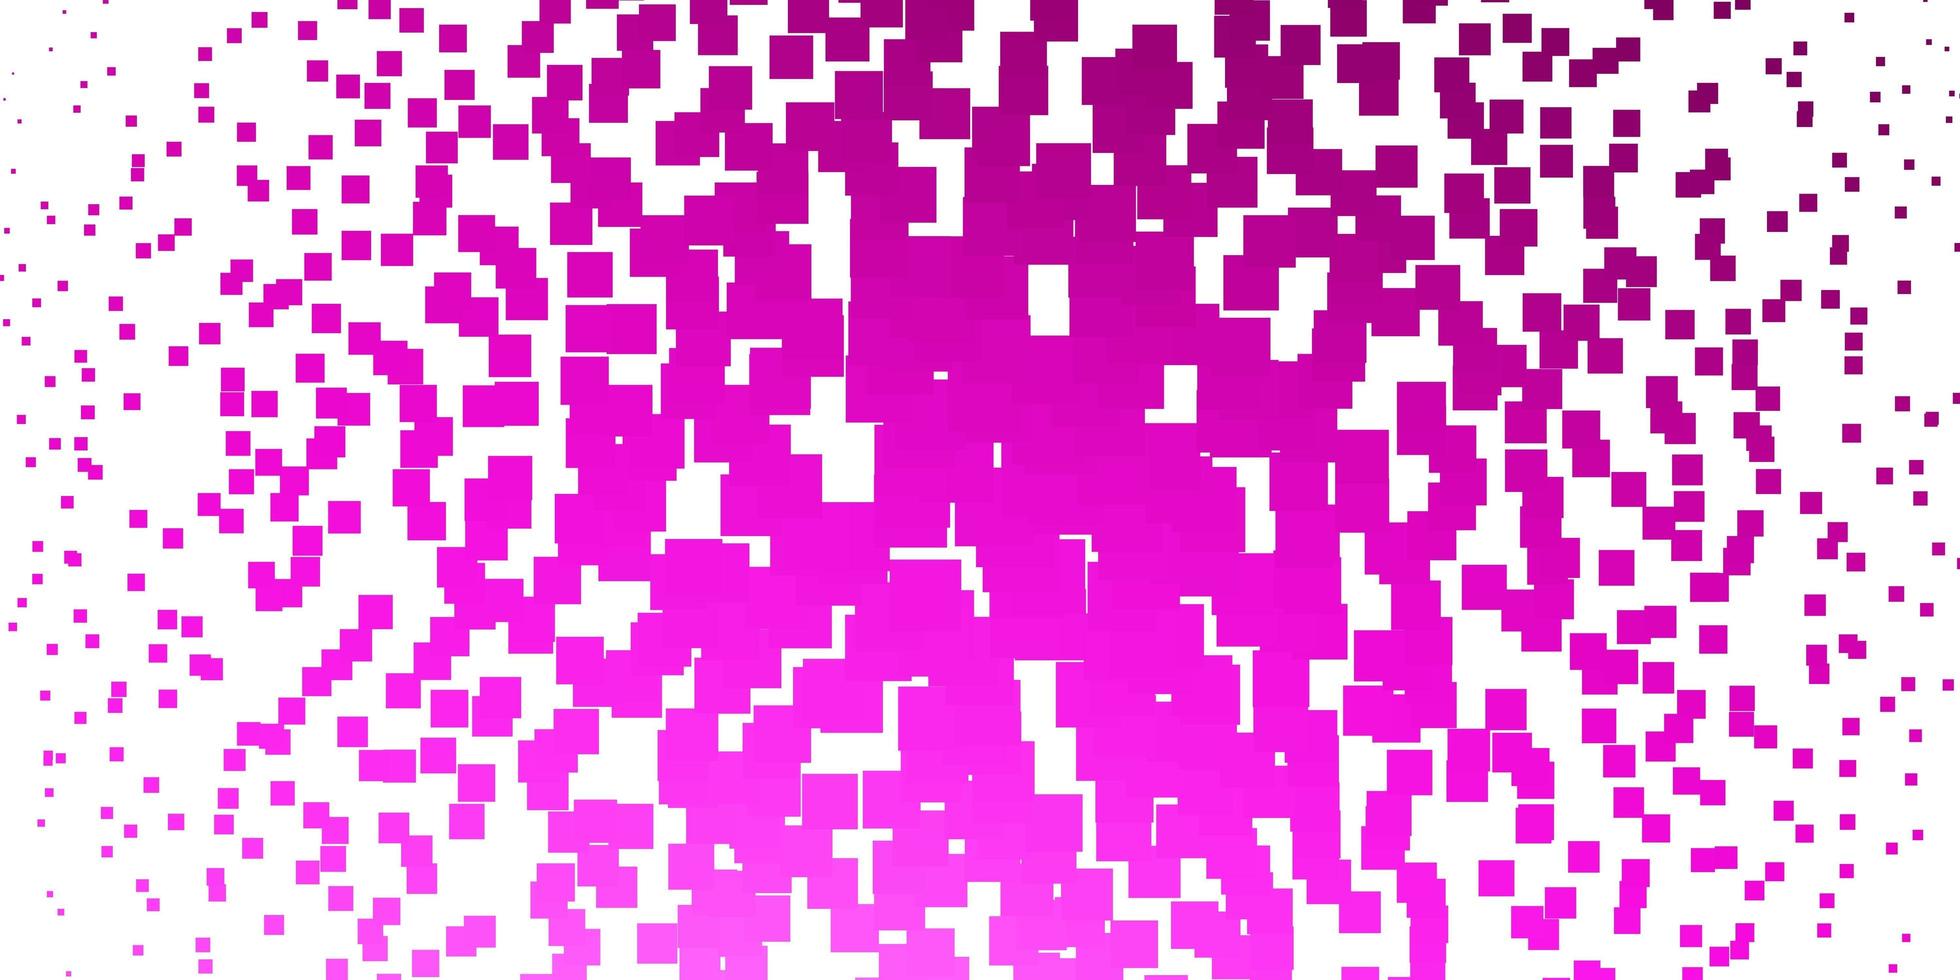 pano de fundo vector rosa claro com retângulos.